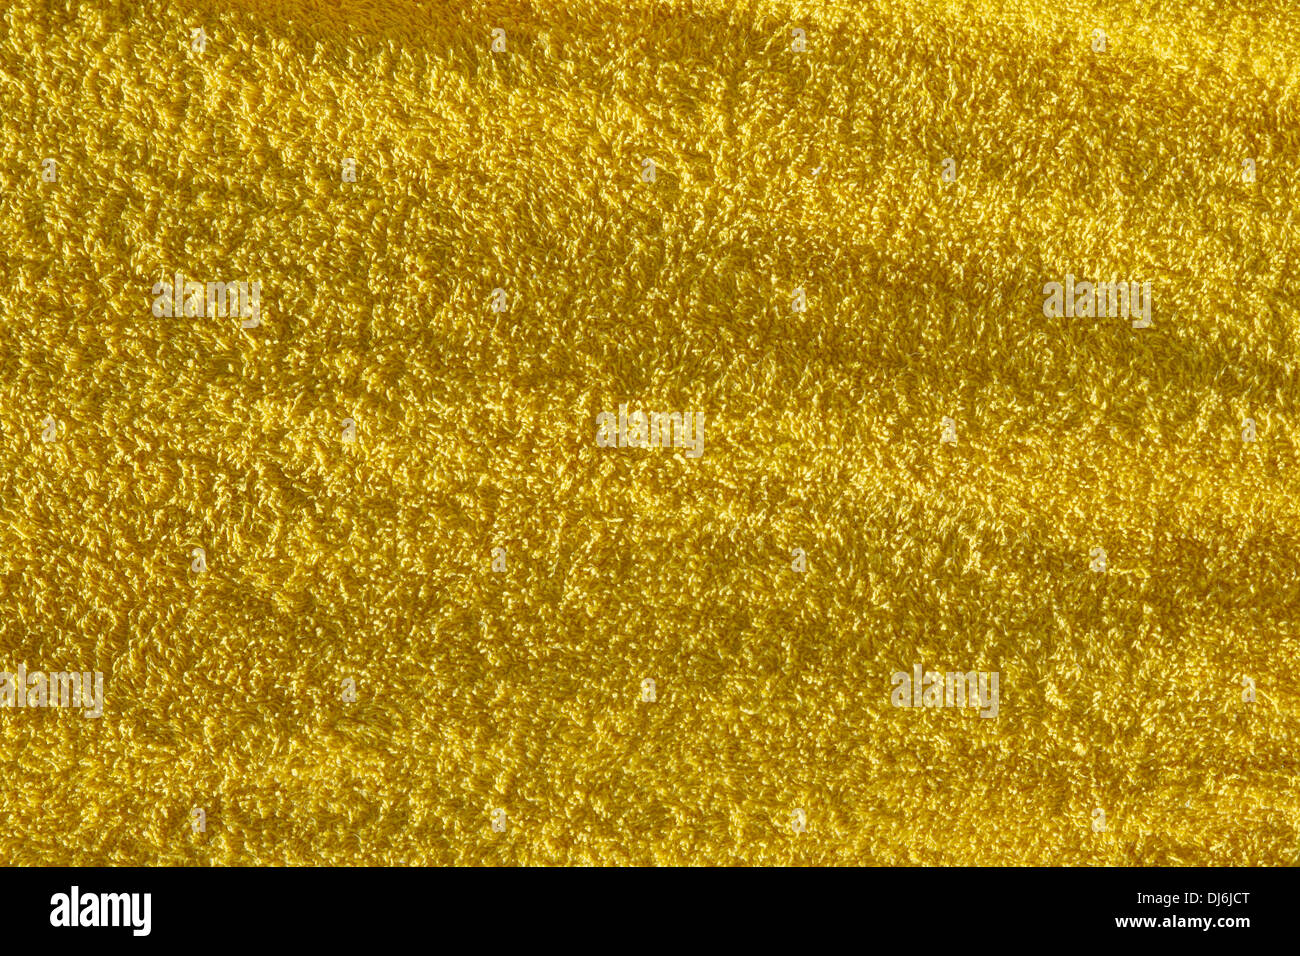 Gros plan d'une serviette éponge de couleur jaune, structure en éponge, image de fond Banque D'Images